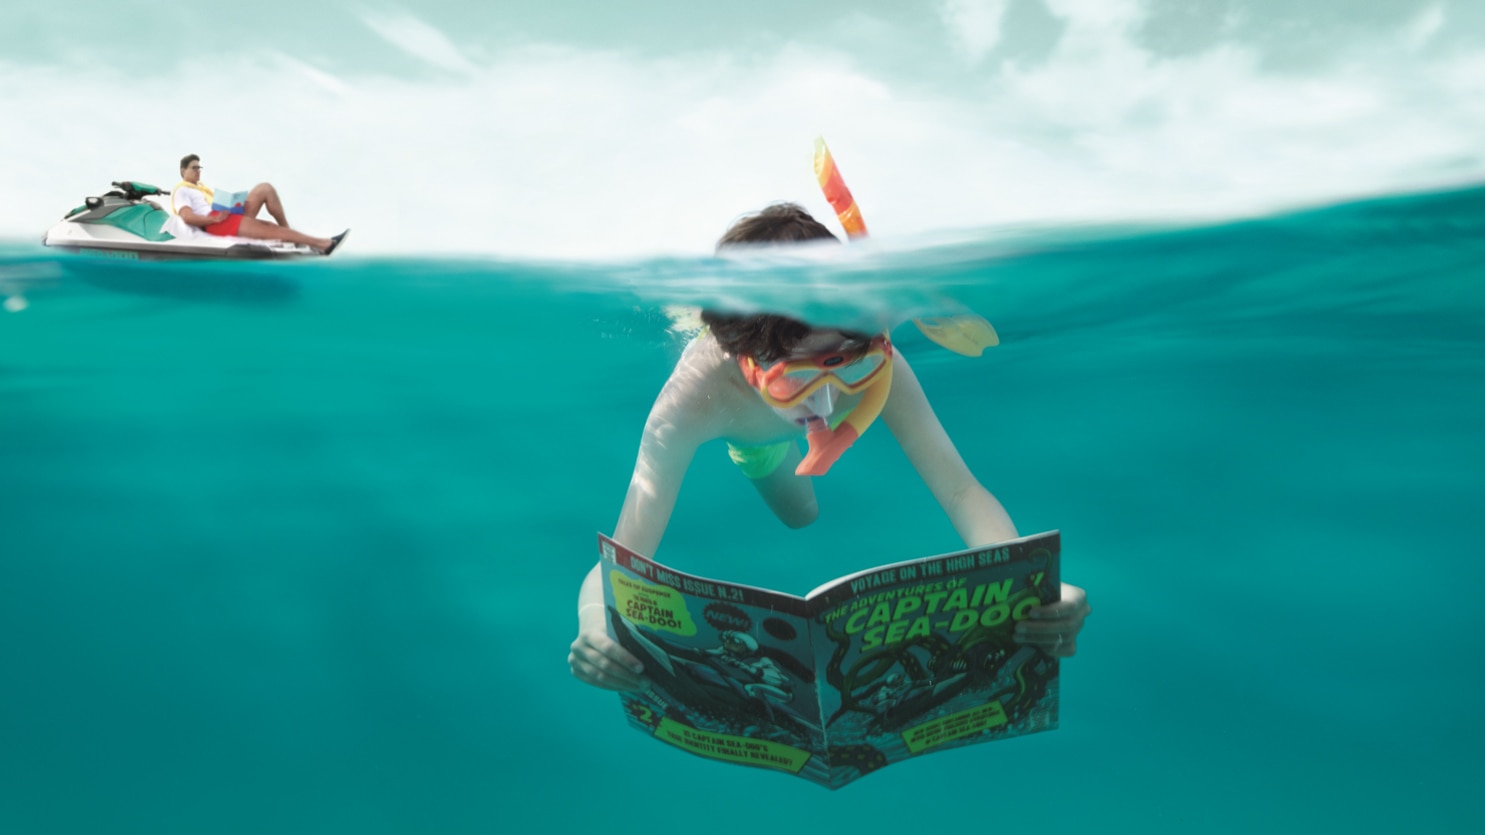  Mlado dijete koje čita izdanje Captain Sea-Doo-a pod vodom